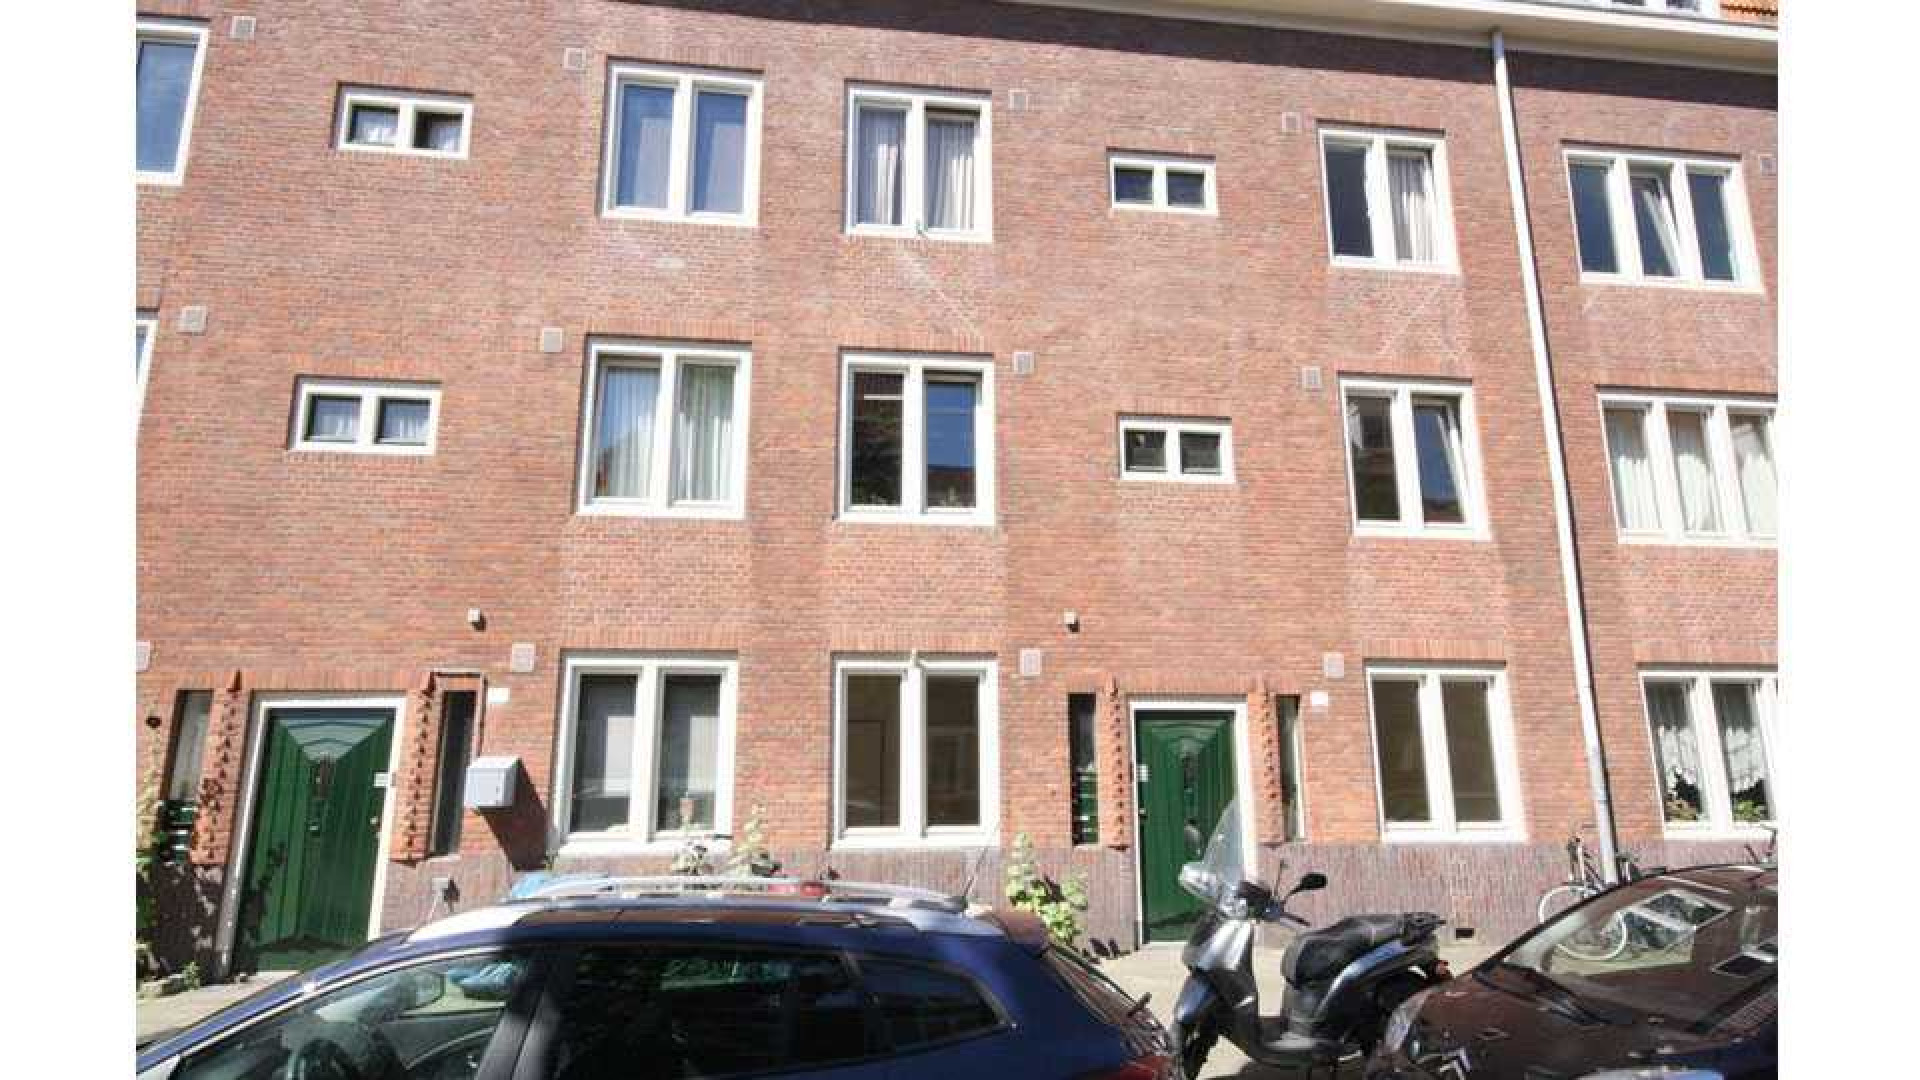 Kluun betaalt dik boven de vraagprijs voor woning in de Amsterdamse De Pijp. Zie foto's 2